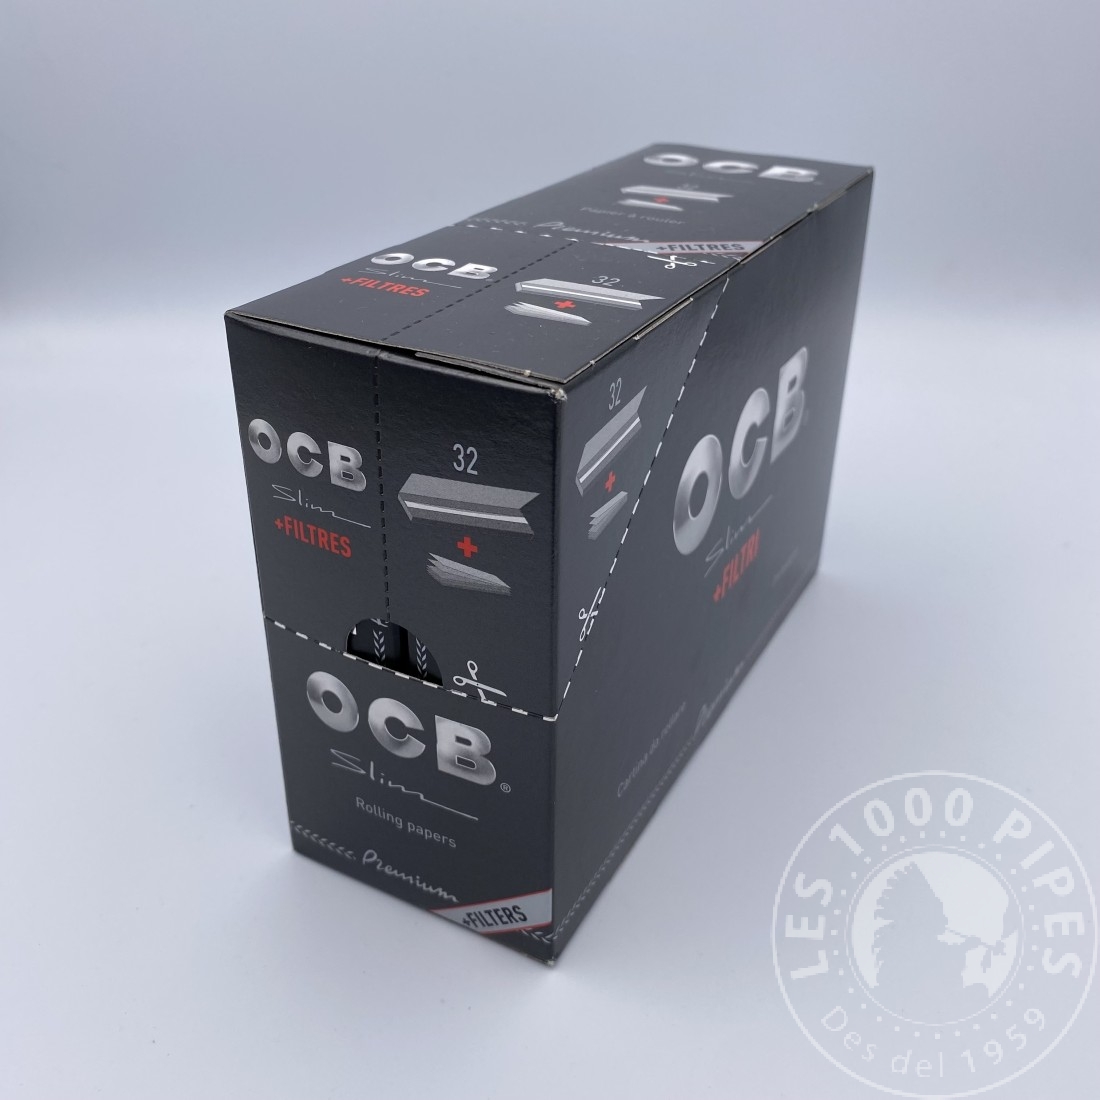 OCB Filtre Slim Extra Long 5.7 mm en Sachet x1 - MajorSmoker